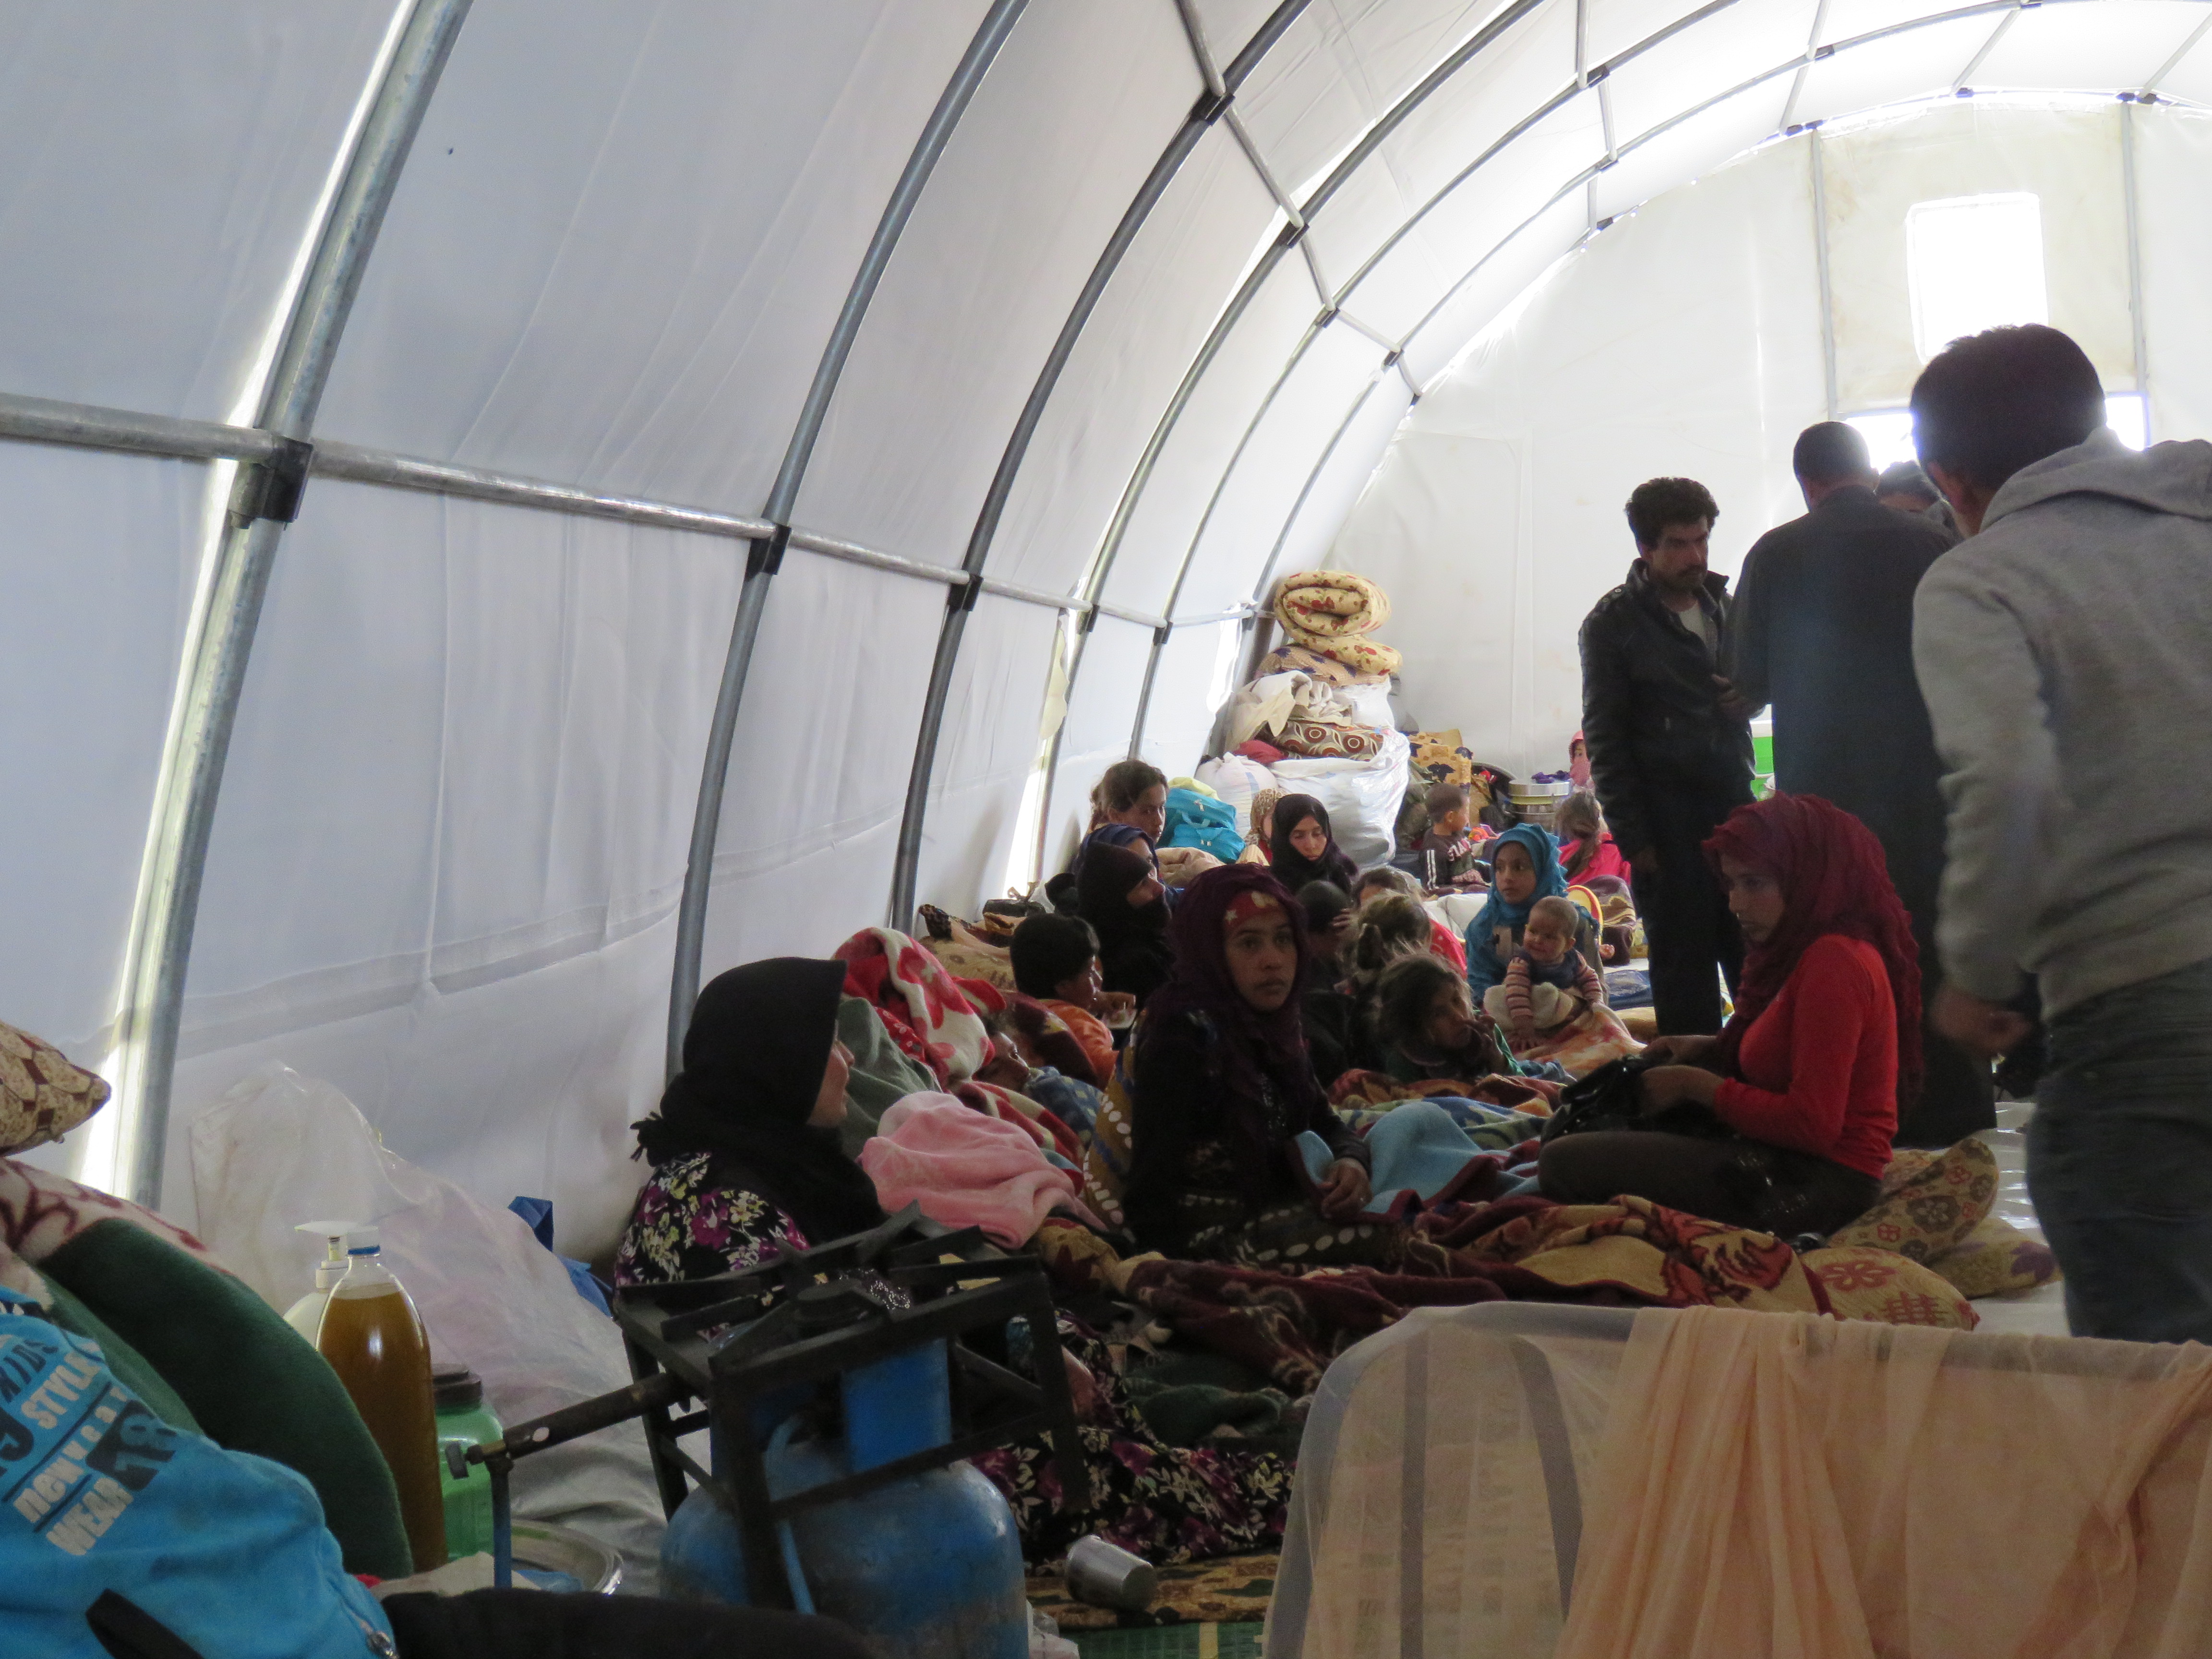 IMG_0884عودة آلاف النازحين إلى جنوبي إدلب وتحذيرات من "كارثة إنسانية" في المخيمات